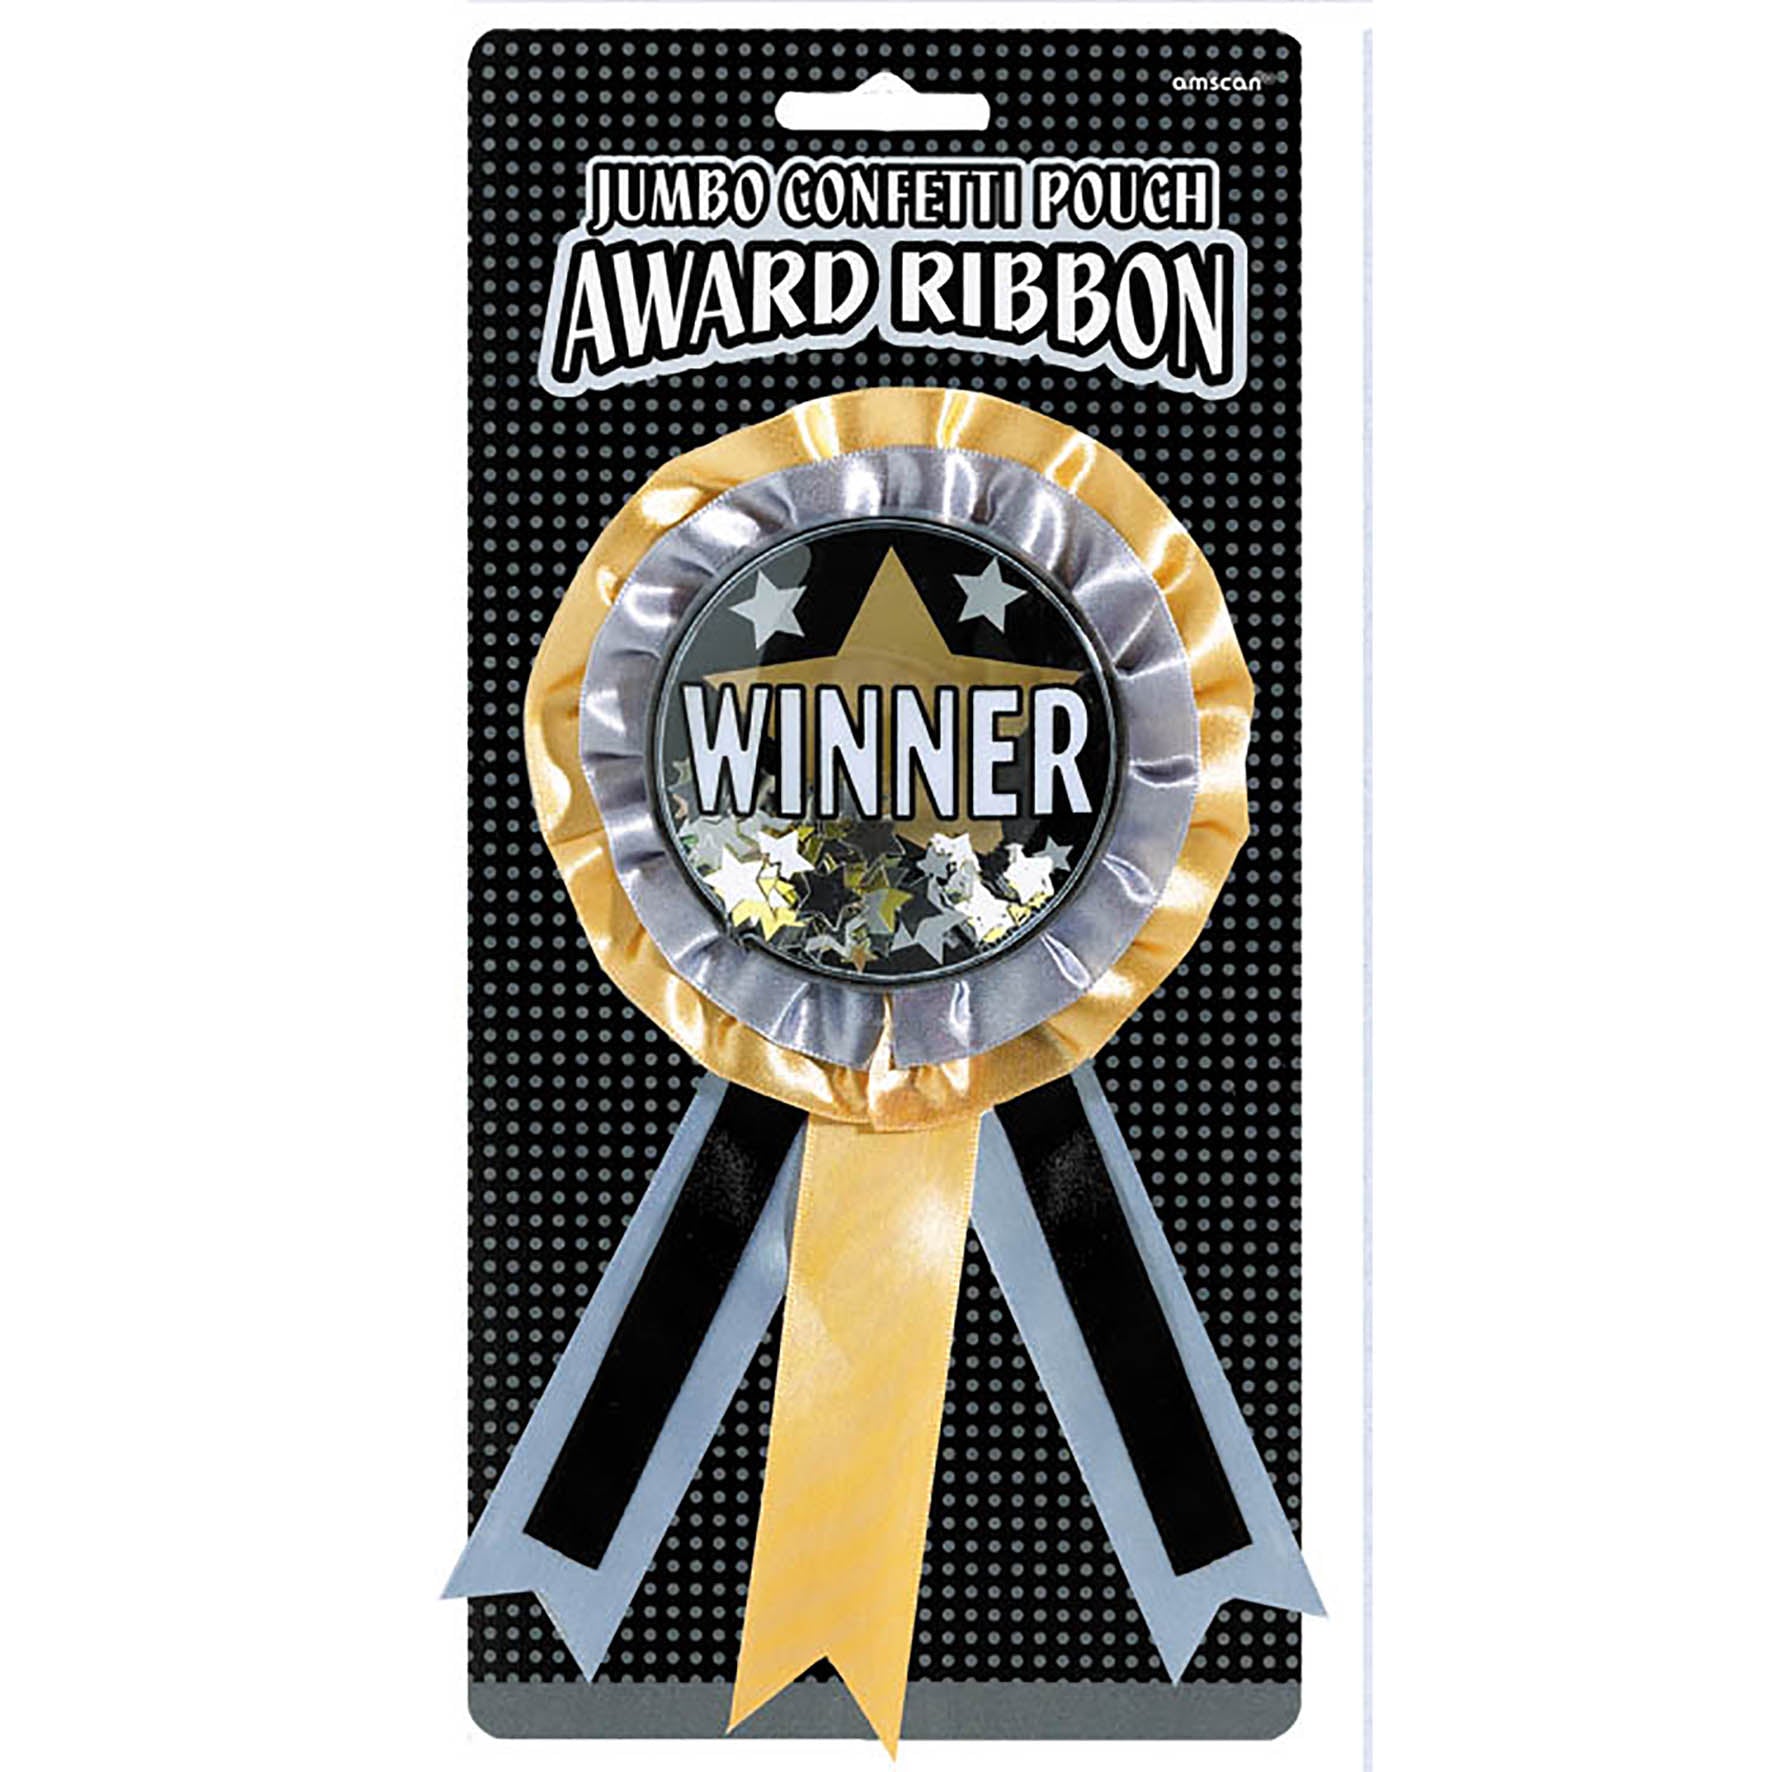 Winner Jumbo Confetti Pouch Ribbon 9in